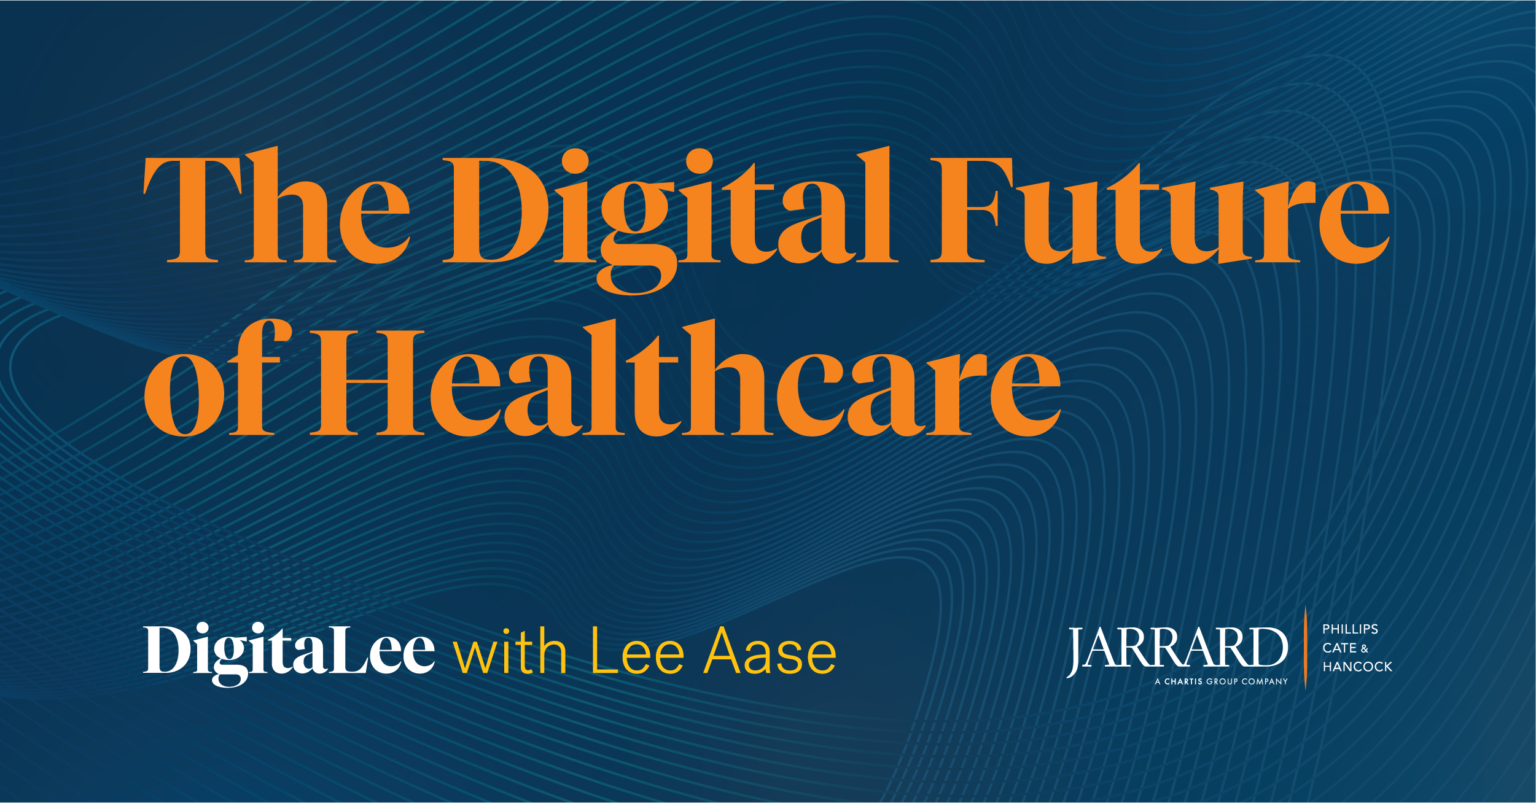 DigitaLee 4: Digitally Enhanced Healthcare, Twitter Alternatives & Execs on Social Media